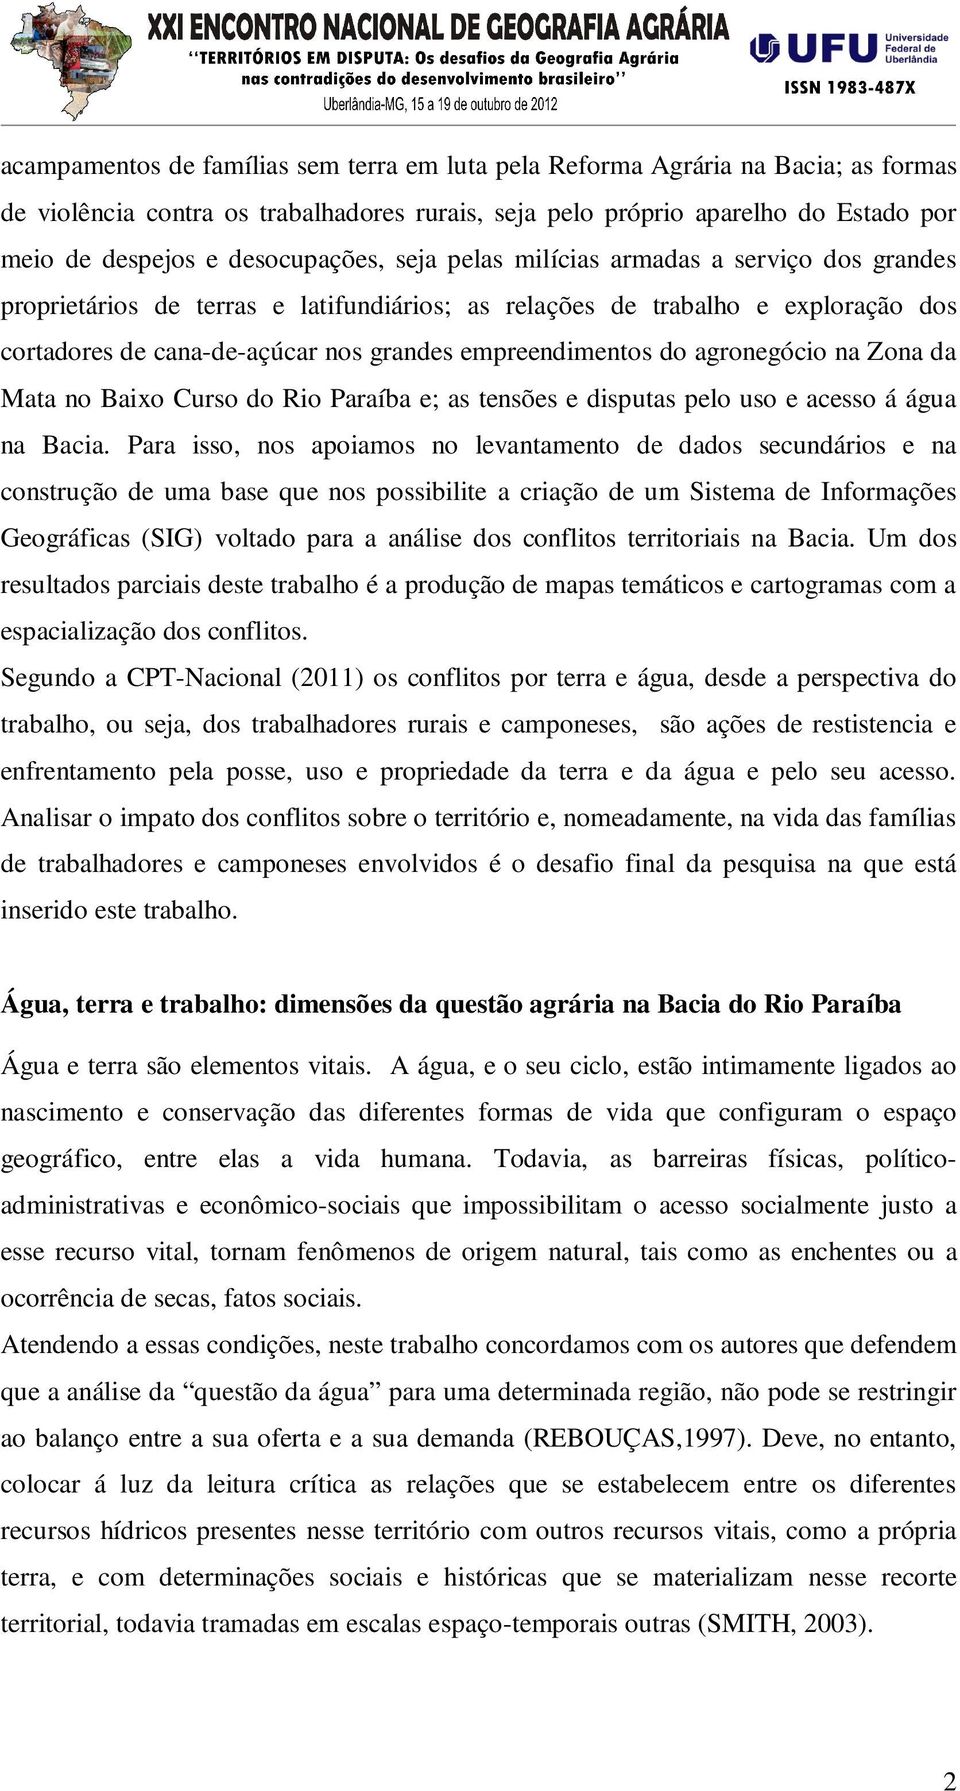 empreendimentos do agronegócio na Zona da Mata no Baixo Curso do Rio Paraíba e; as tensões e disputas pelo uso e acesso á água na Bacia.